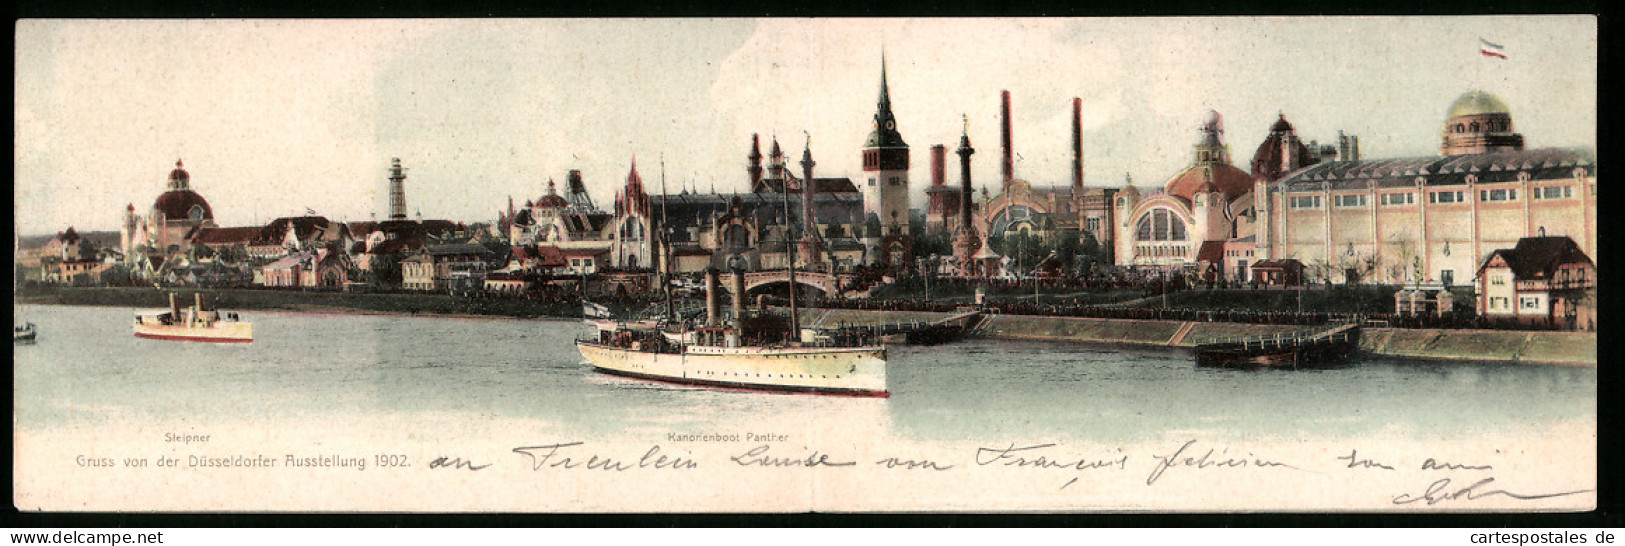 Klapp-AK Düsseldorf, Ausstellung 1902, Panorama Der Stadt Mit Sleipner Und Kanonenboot Panther  - Exhibitions